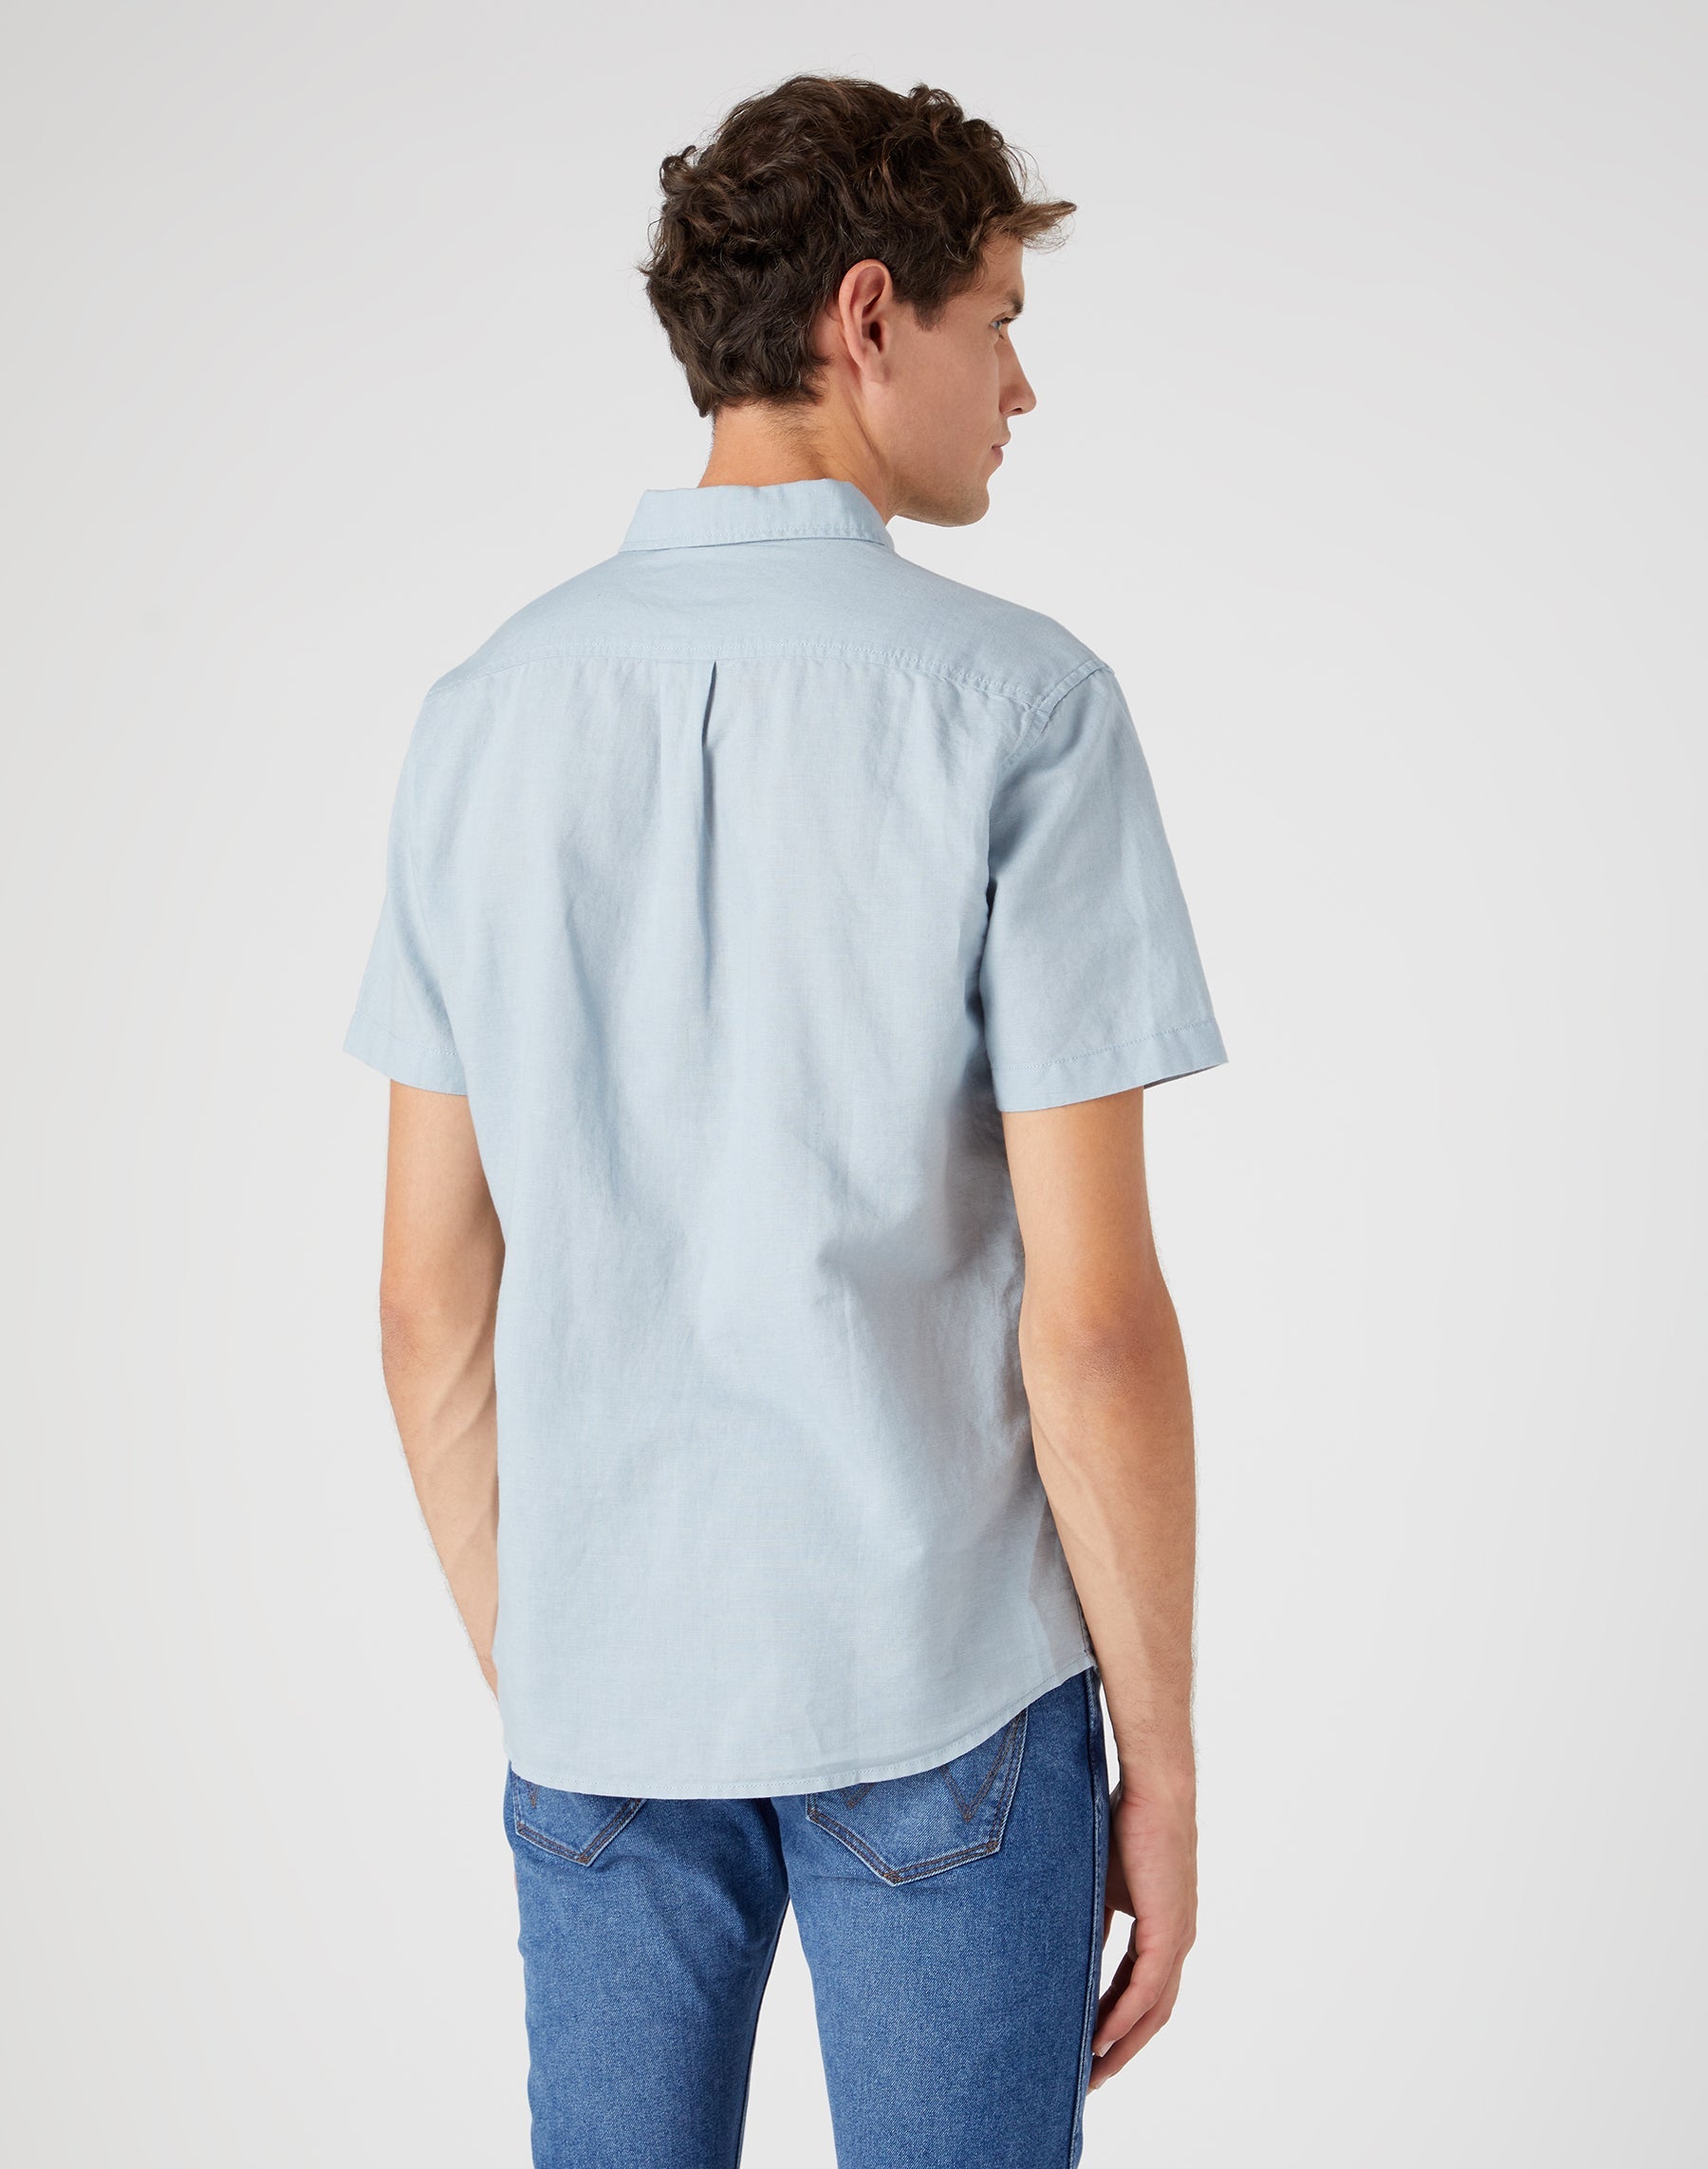 Kurzarm One Pocket Shirt in Blue Fog Hemden Wrangler   